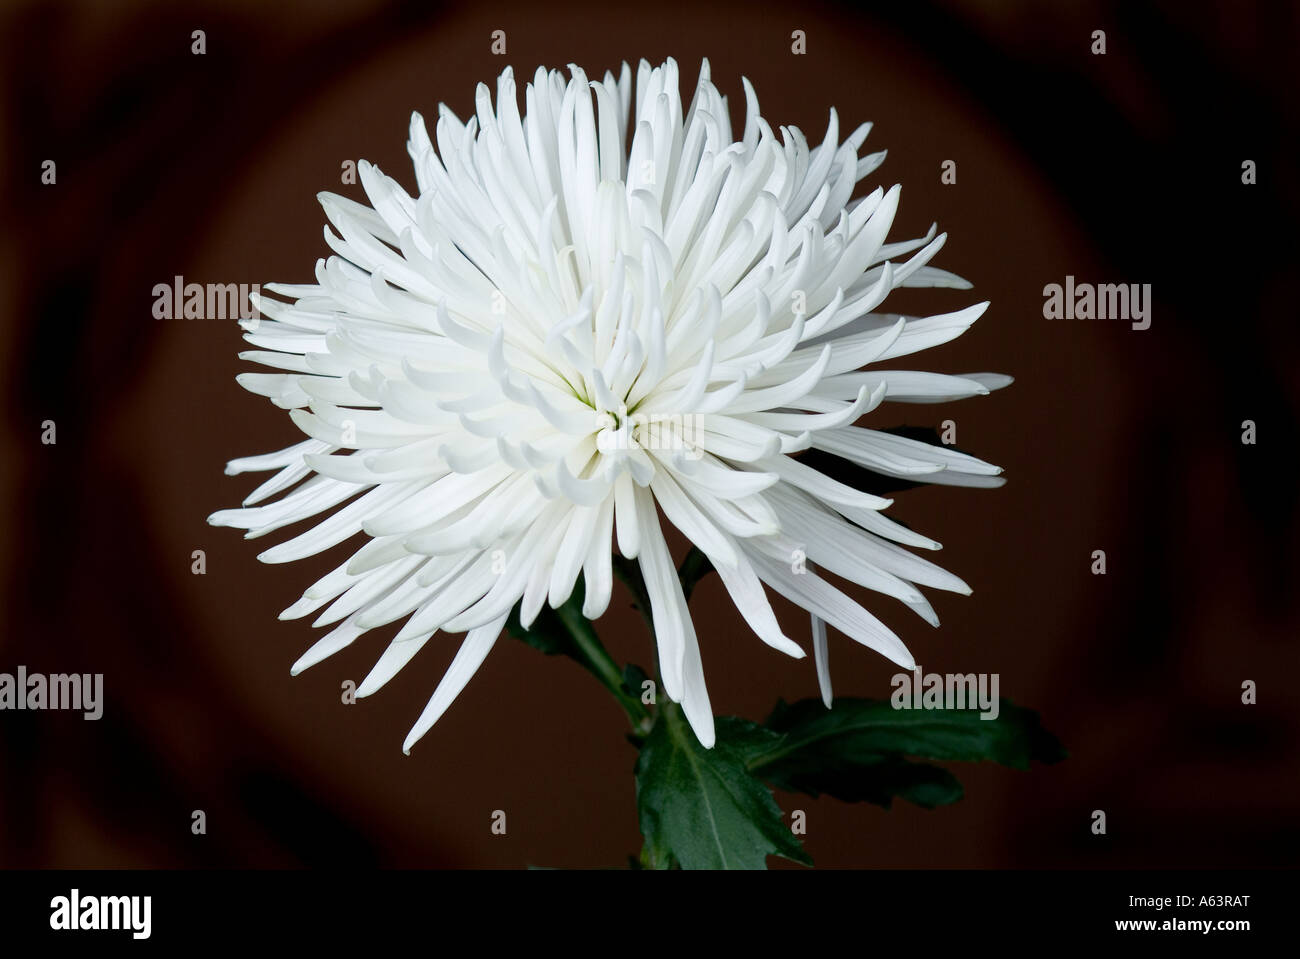 Spider chrysanthème blanc Banque D'Images